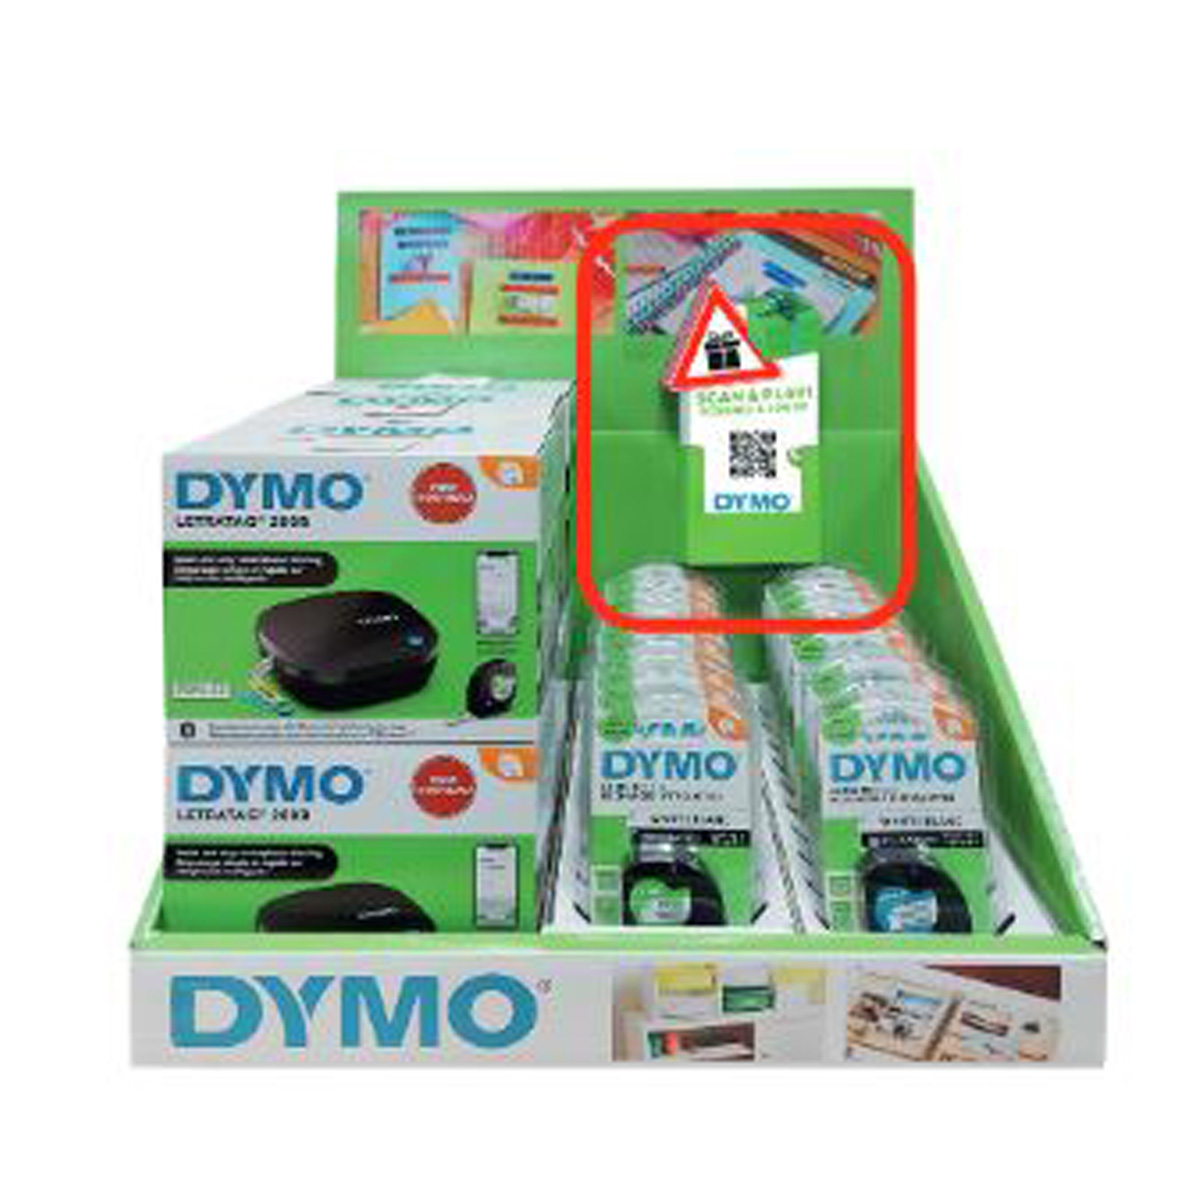 DYMO LT-200B kleines Display mit 6 Geräten + 20 Bänder - 2188202